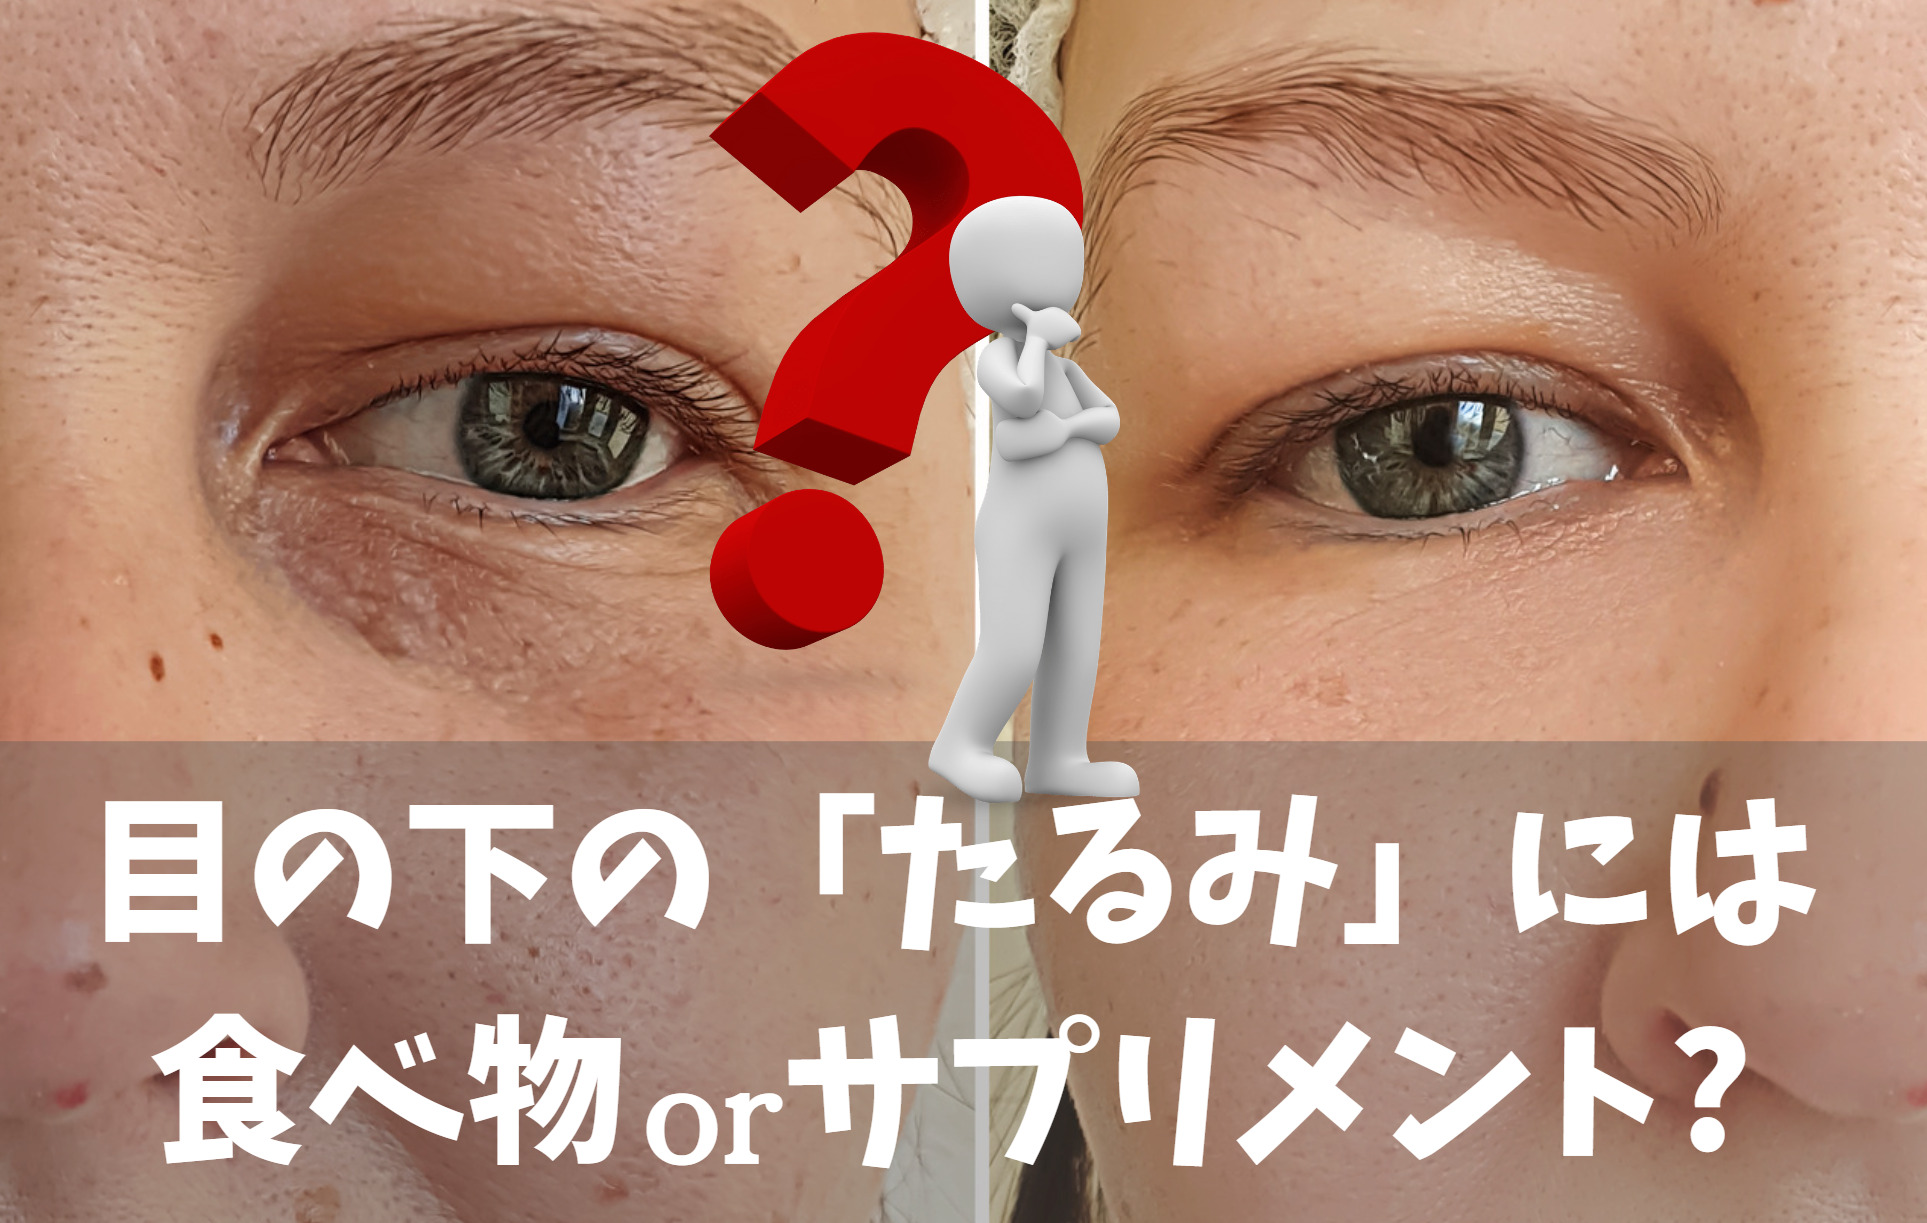 目の下のたるみに効く食べ物よりもサプリメントを利用すべき3つの理由!日本で唯一顔肌のうるおい効果が実証されているサプリとは?